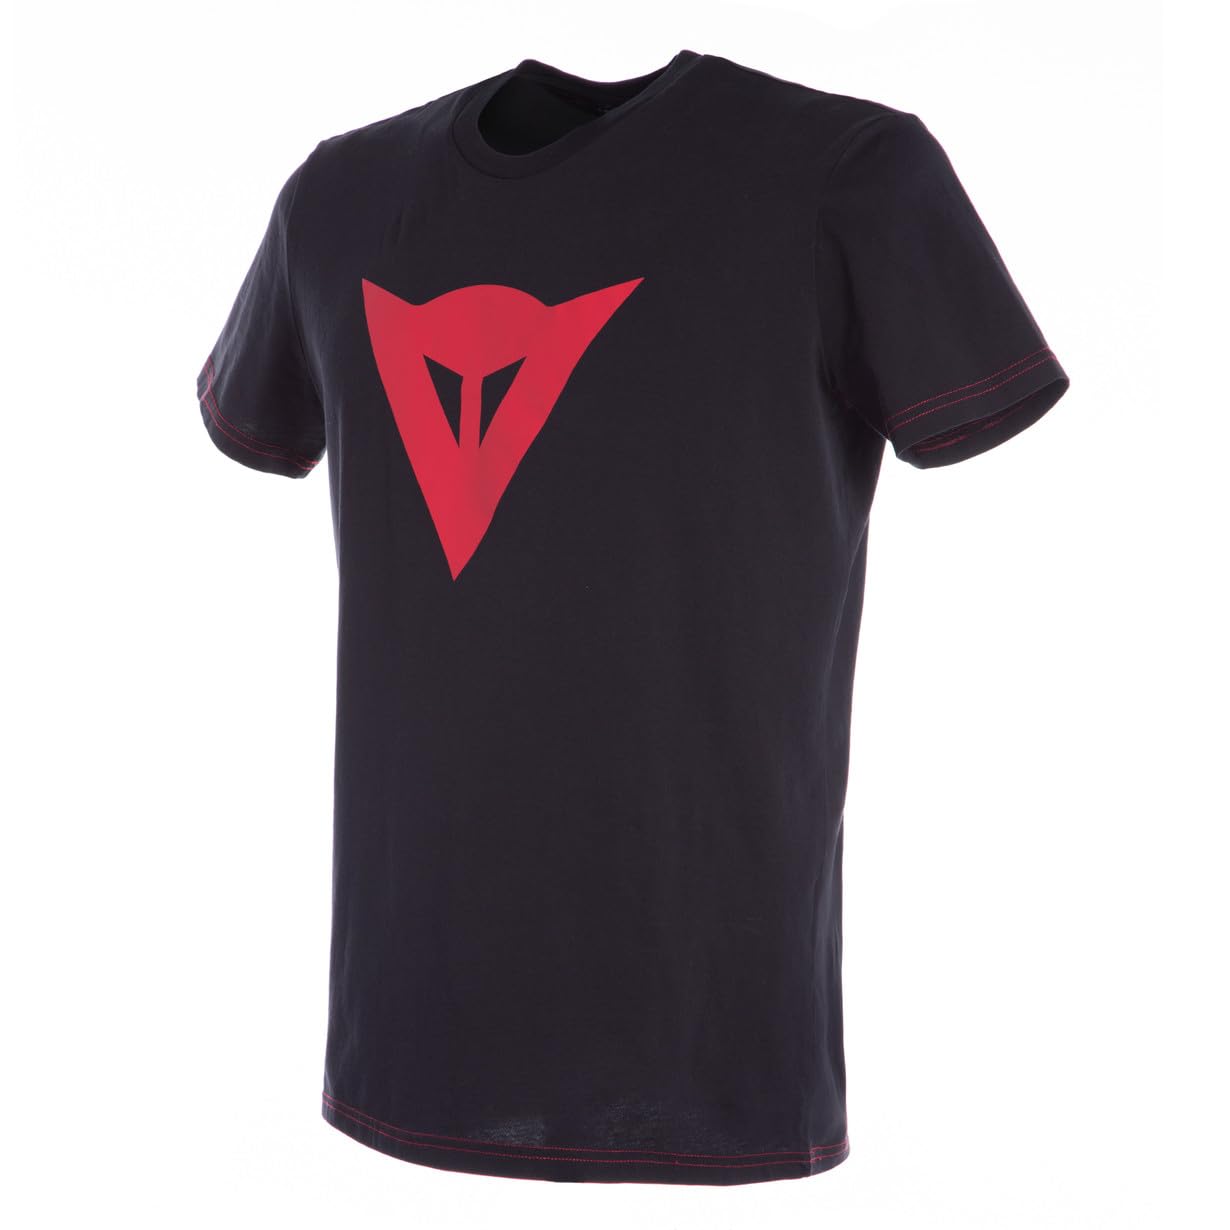 Dainese - Speed Demon T-Shirt, Herren T-Shirt mit Kurzen Ärmeln, Trikot mit Speed Demon Logo für Erwachsene, aus 100% Baumwolle, Weich und Cool, Klassischen Stil, Schwarz/Rot von Dainese